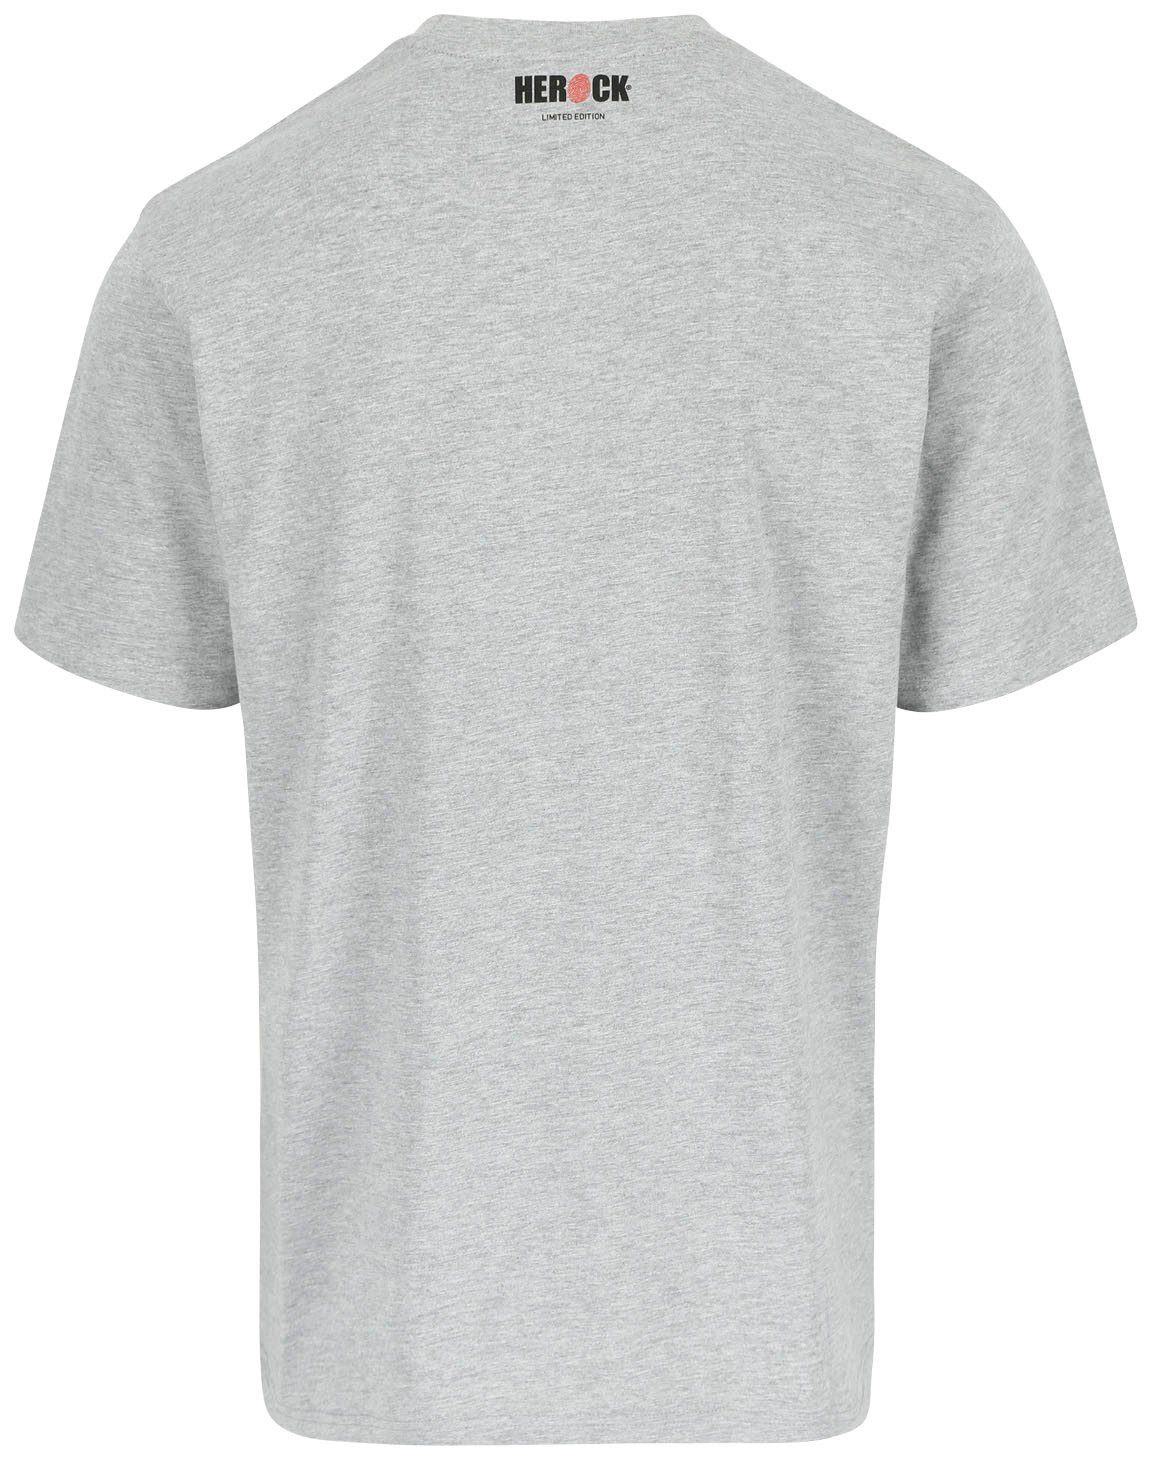 Limited Farben Herock Edition, Worker T-Shirt in erhältlich verschiedene hellgrau